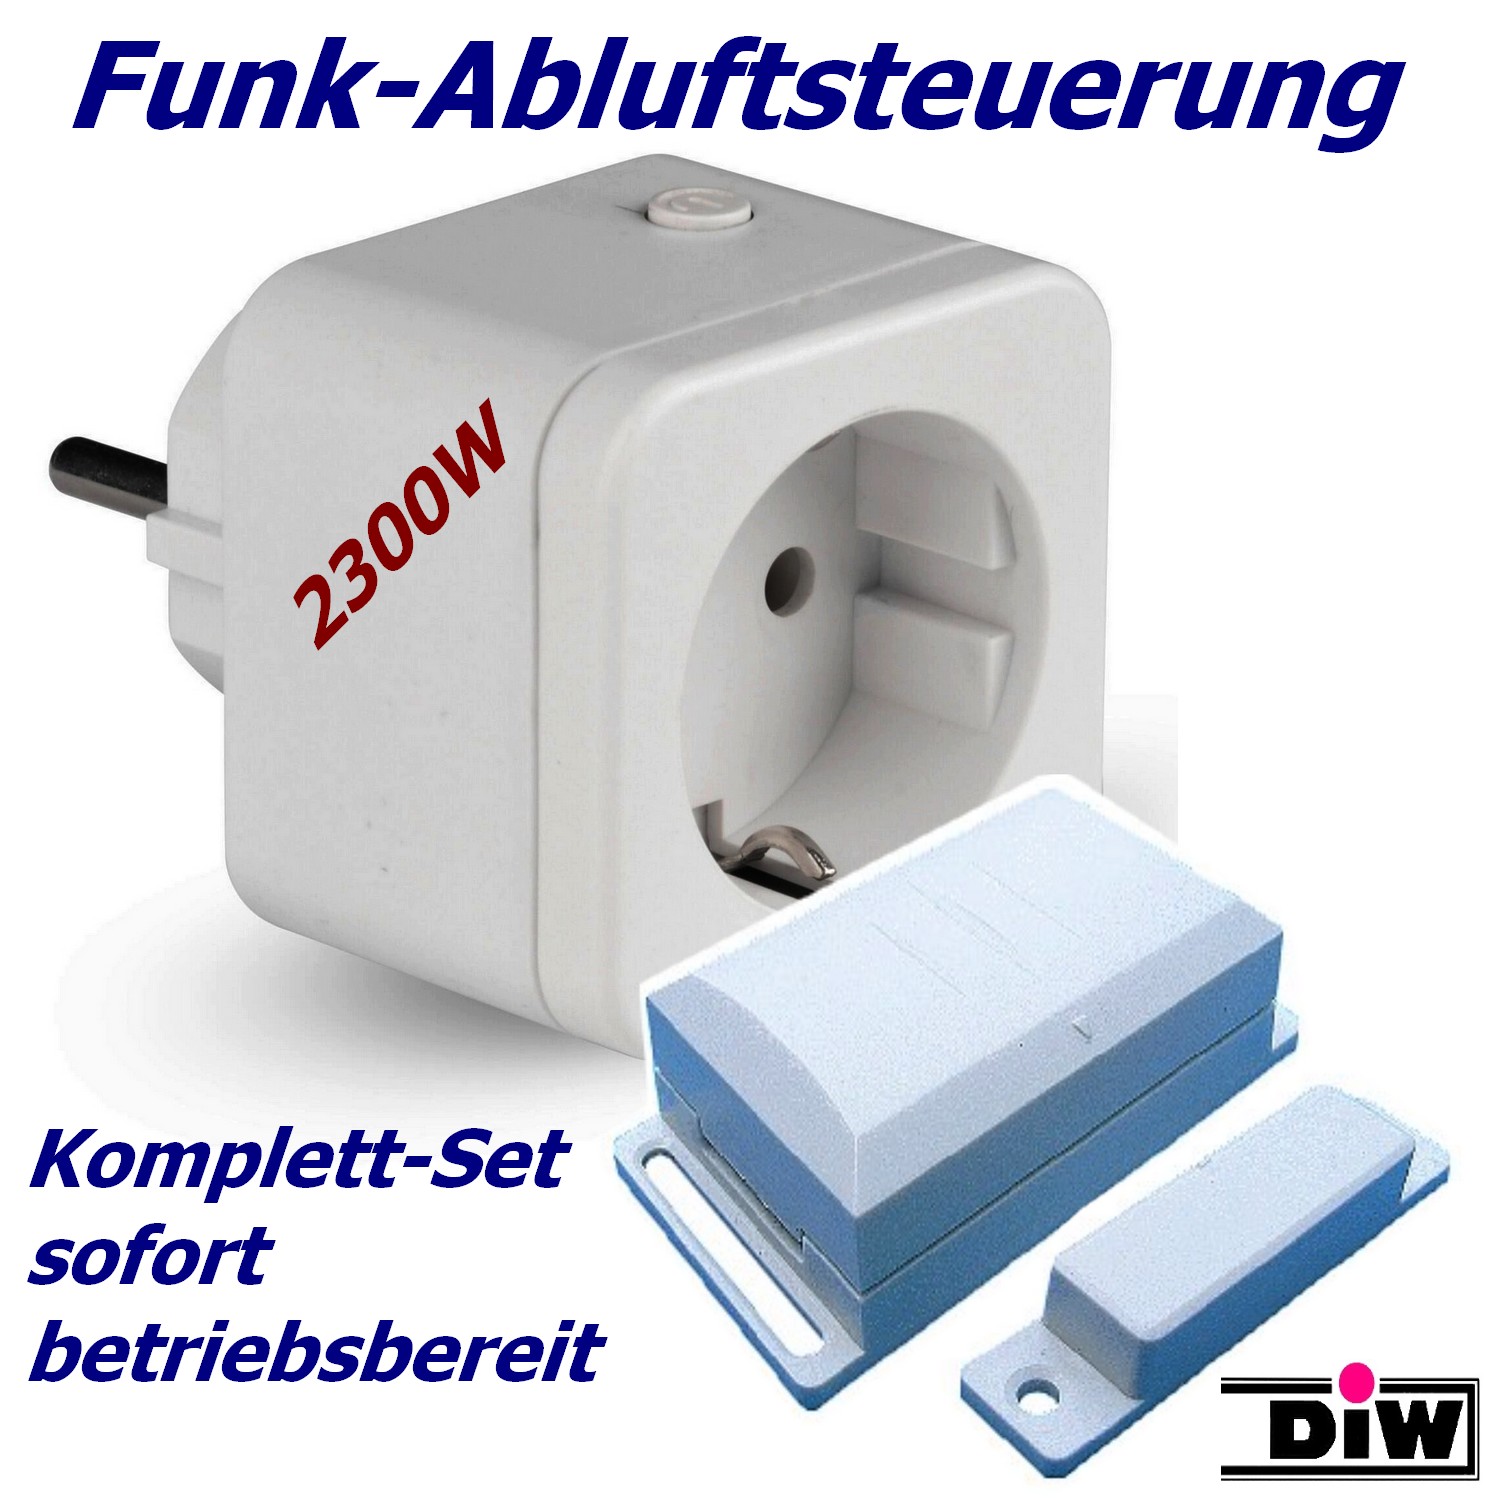 DFS-1000 Funk-Abluftsteuerung mit Powerstecker zum Top-Preis! (c) www.Funk-Abluftsteuerung.de